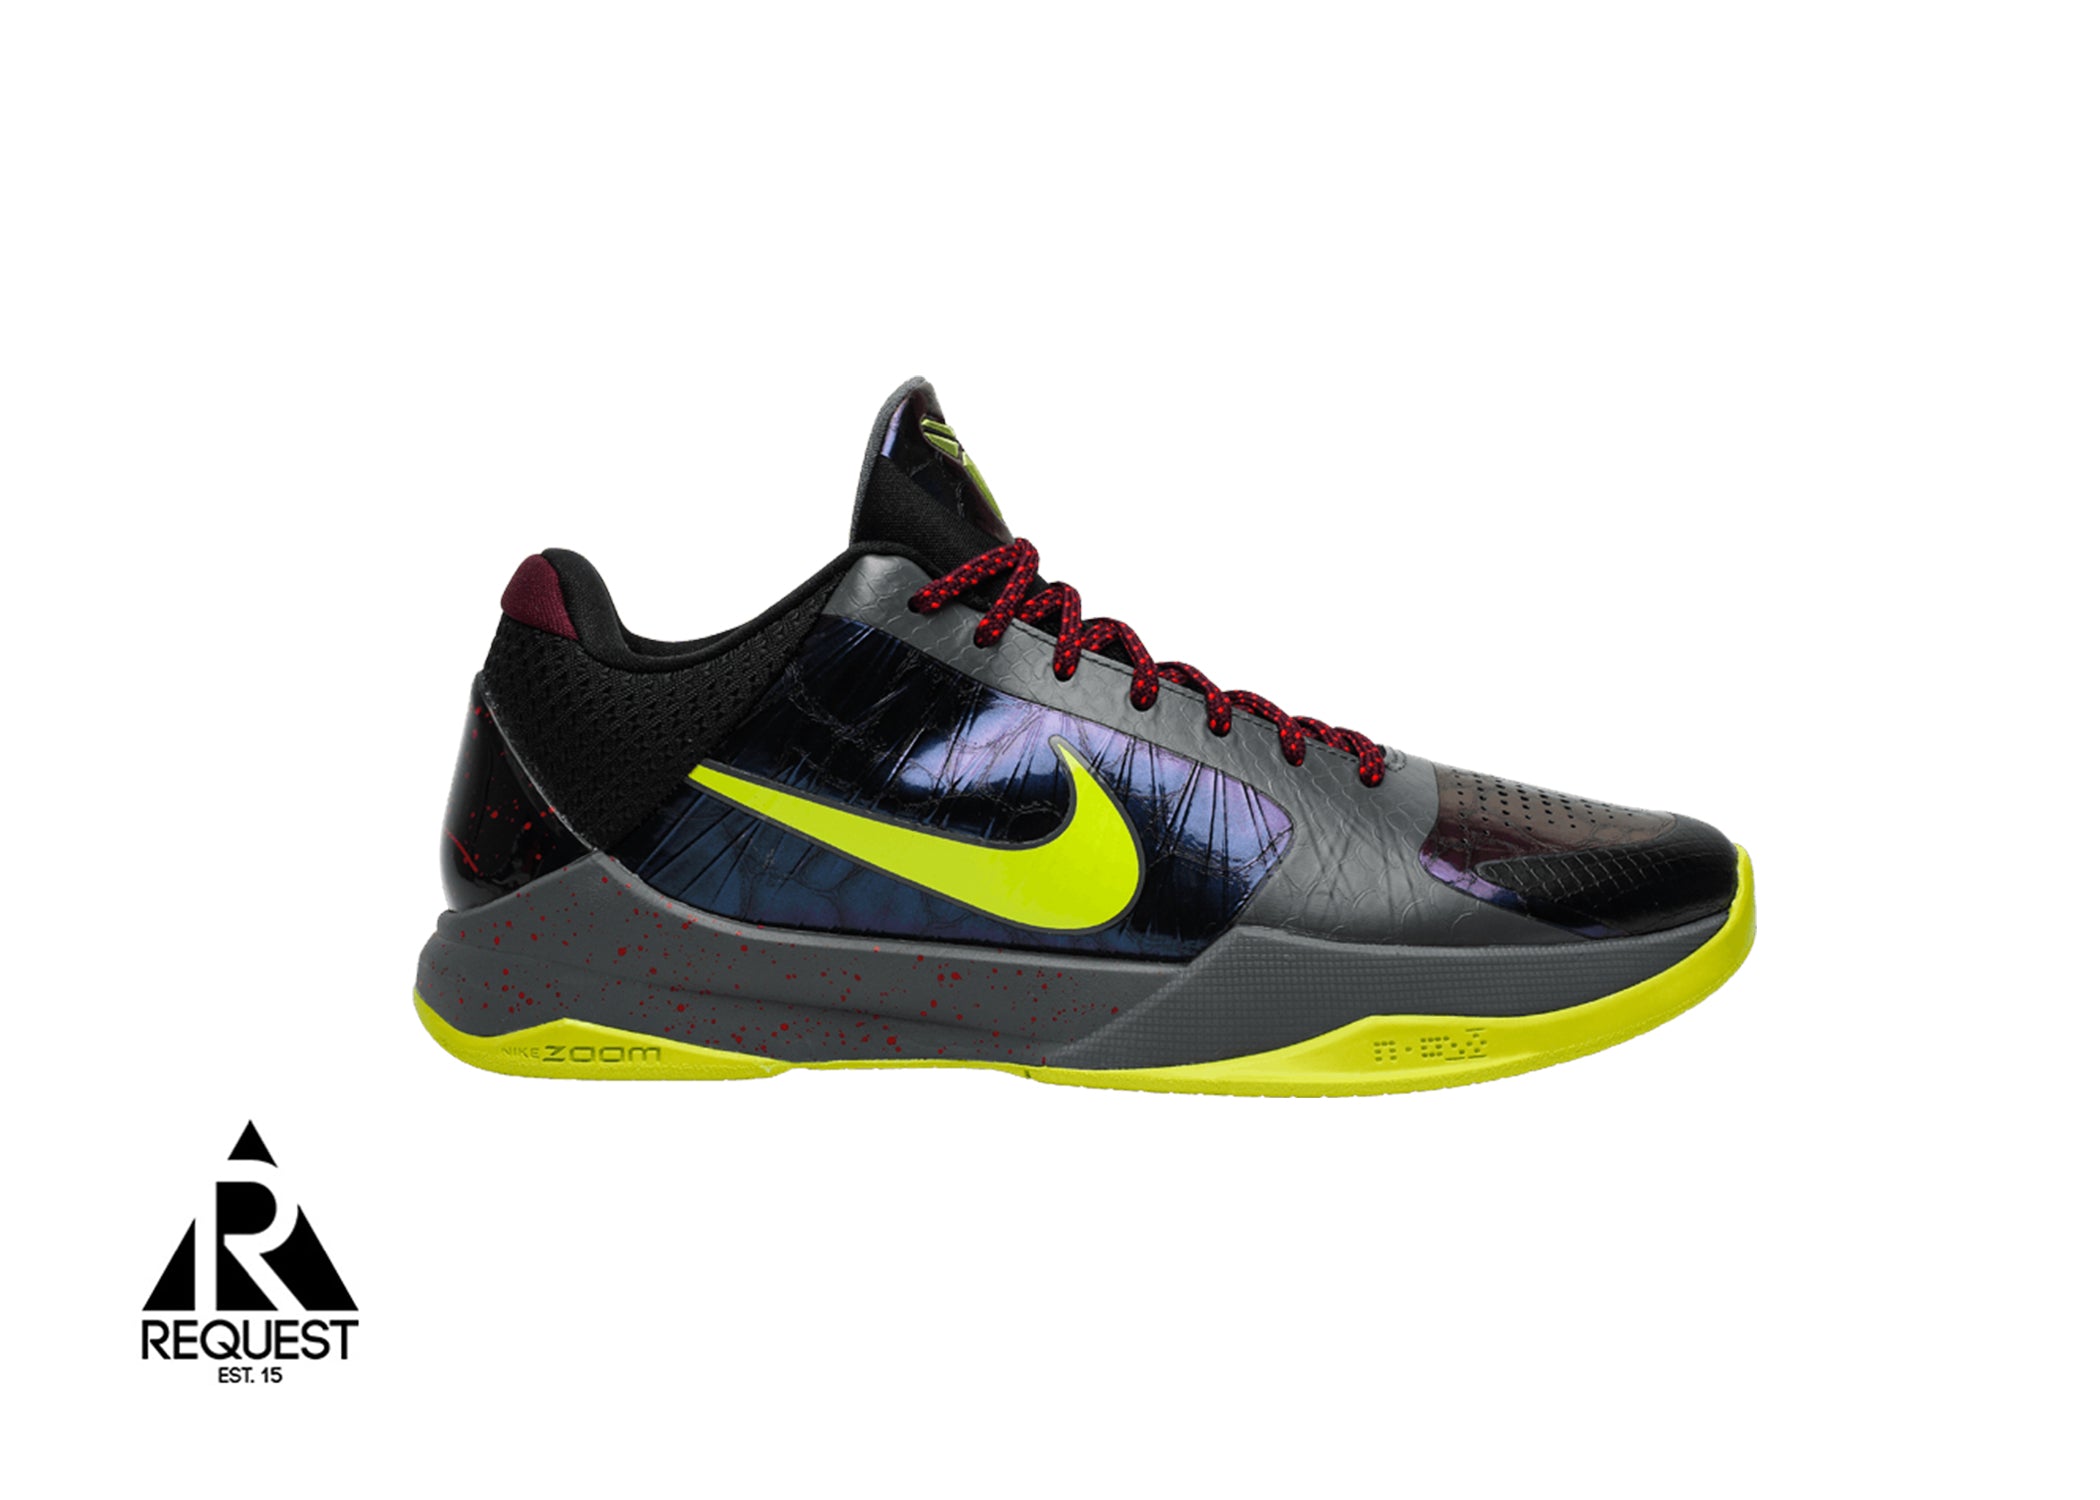 Nike Kobe V “Protro 2K Player Exclusive” | Request